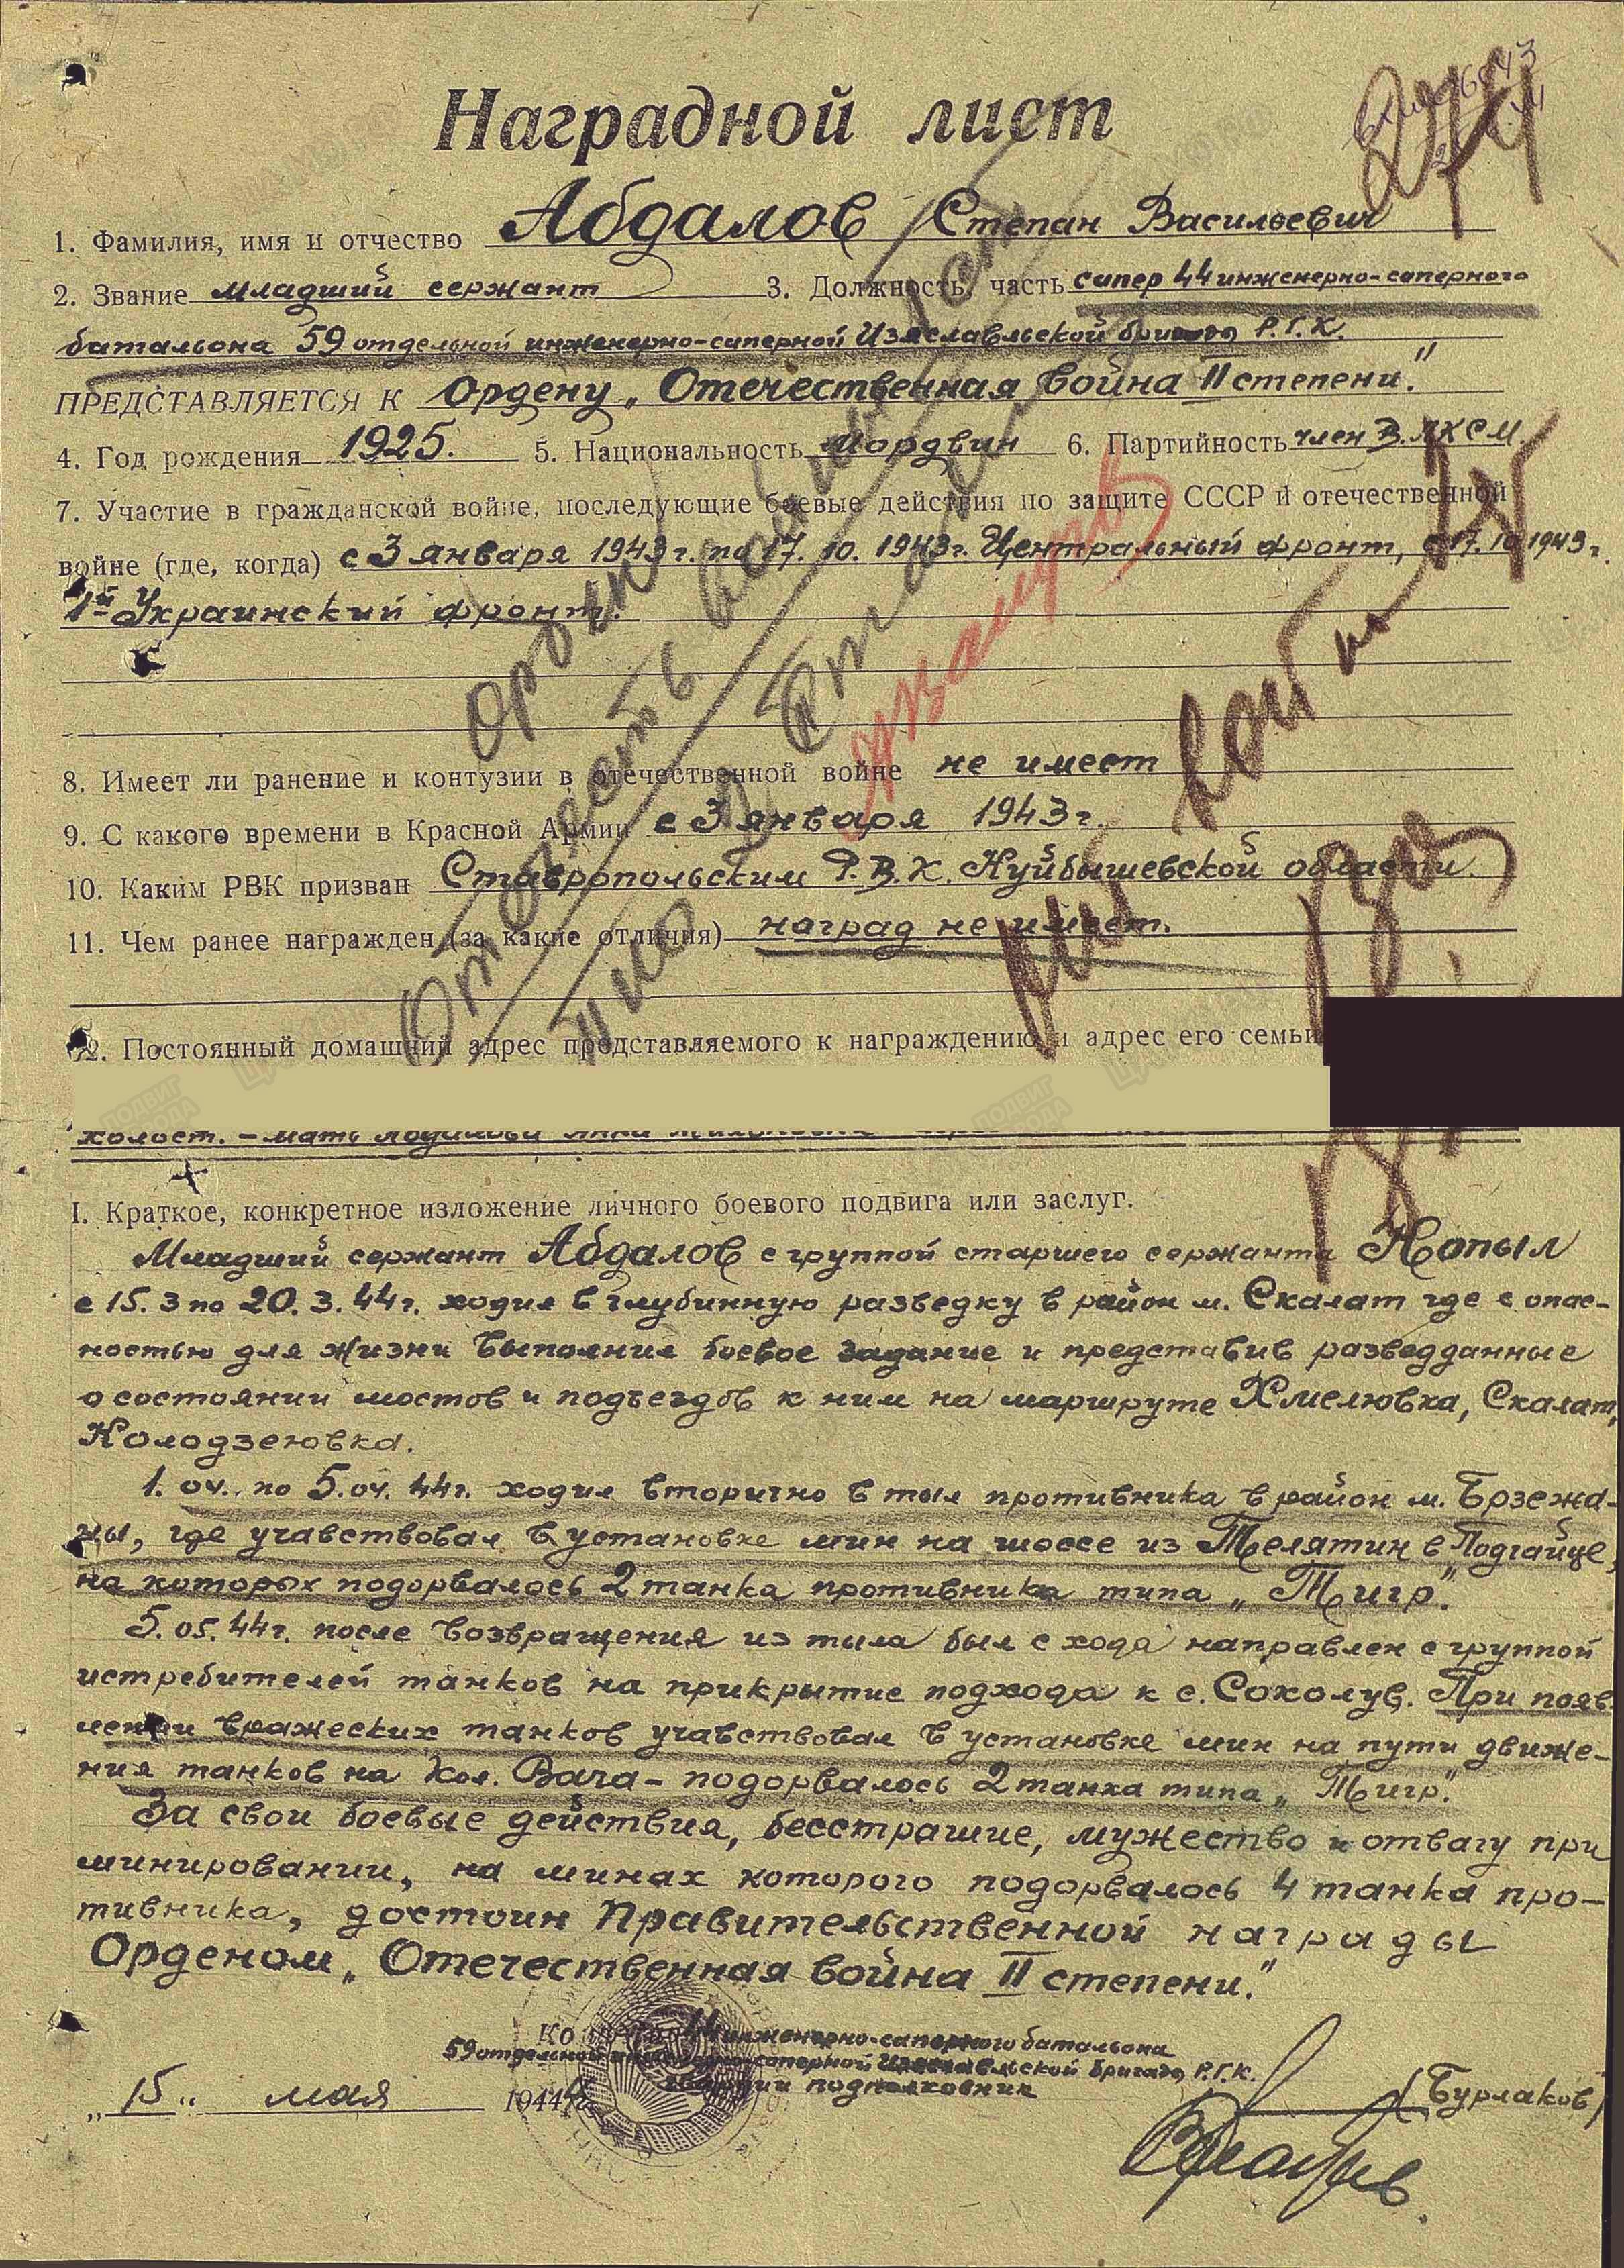 Абдалов С.В. Наградной лист от 15.05.1944 г., орден Отечественной войны II степени (архивная копия)